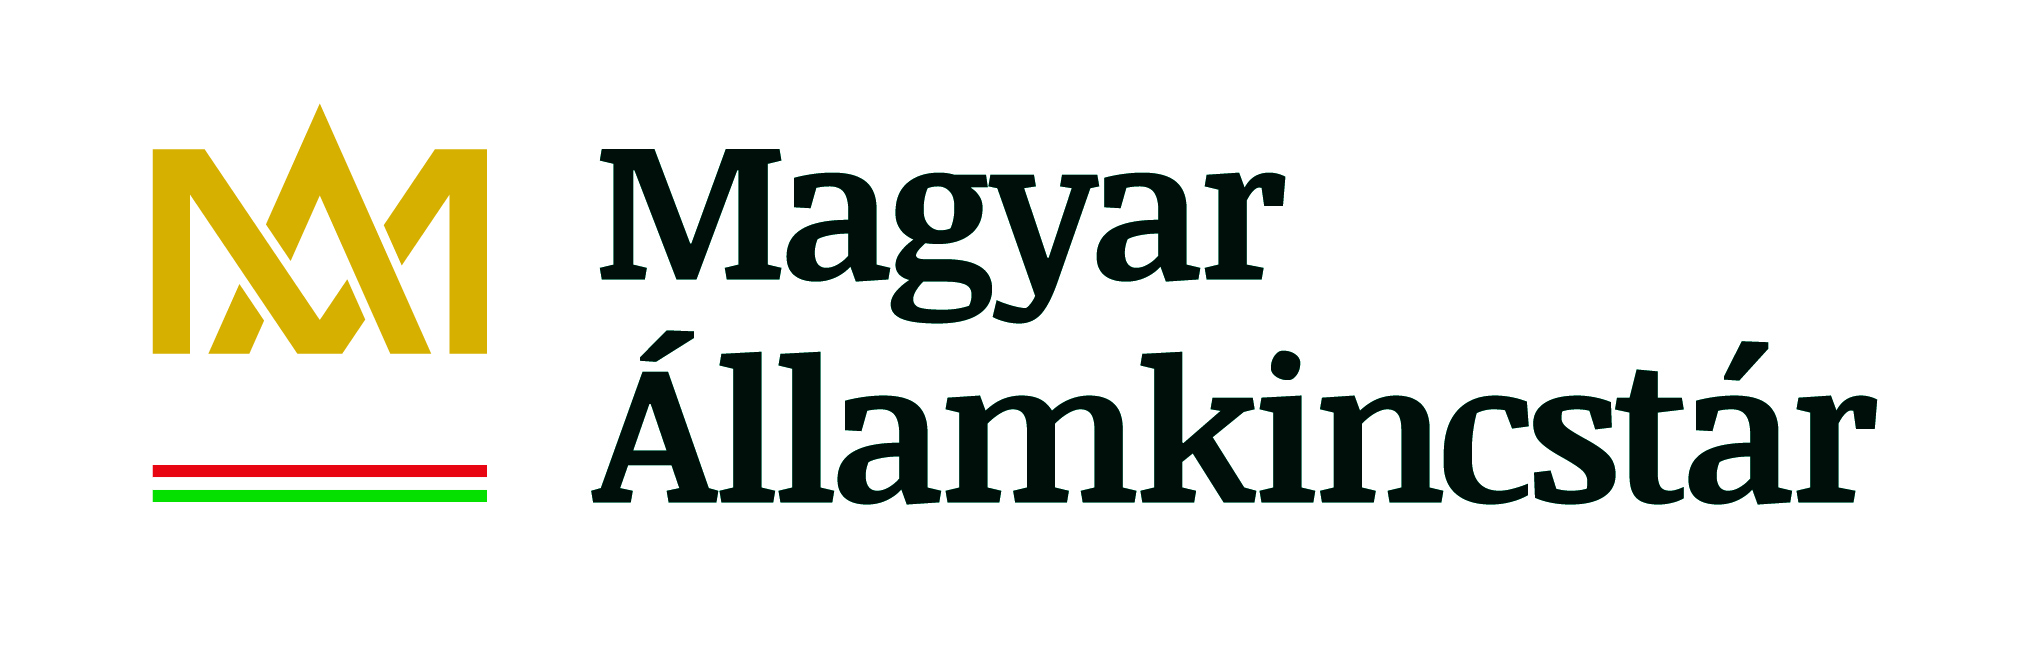 Magyar_Allamkincstar_logo